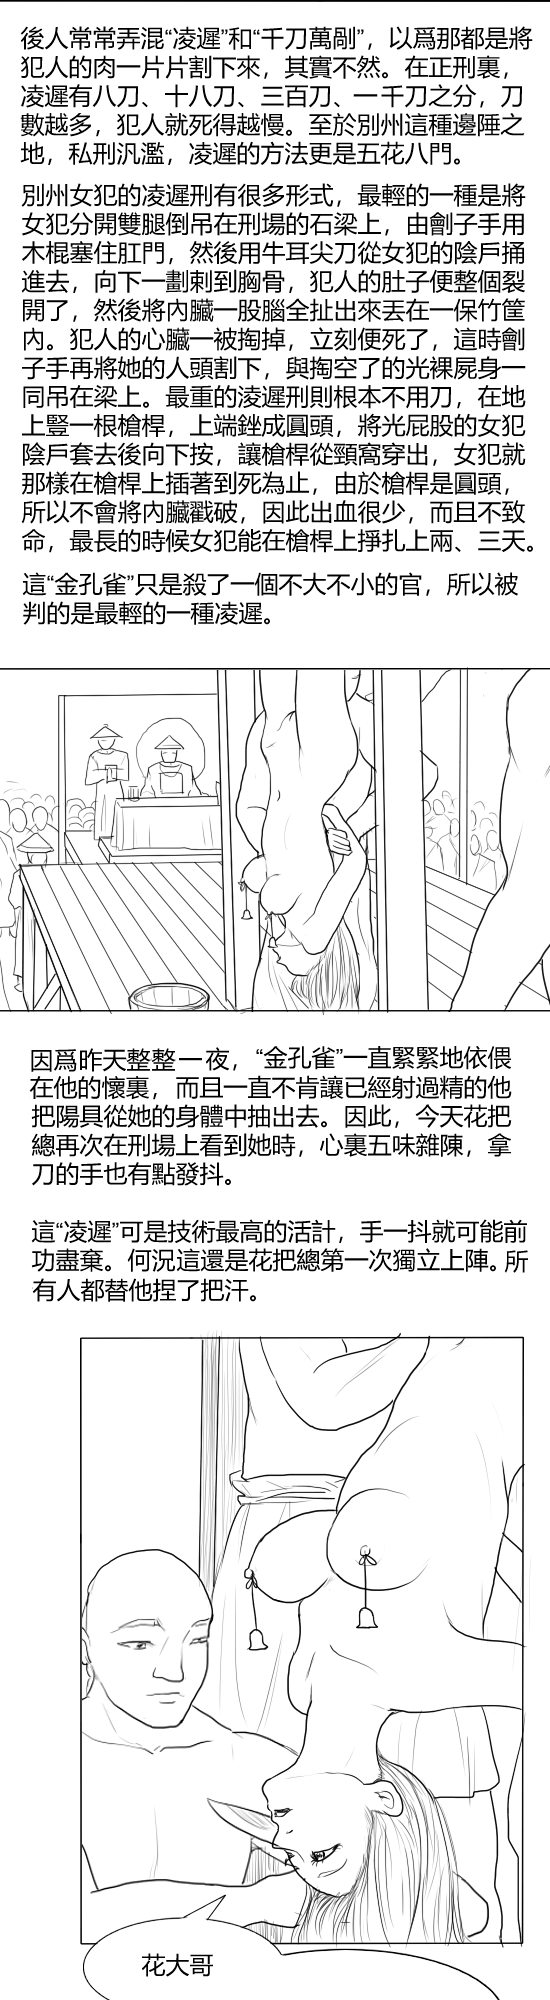 [淵] Fallen Flowers Chapter 1 | 落英  第一话 [Chinese] - Page 7